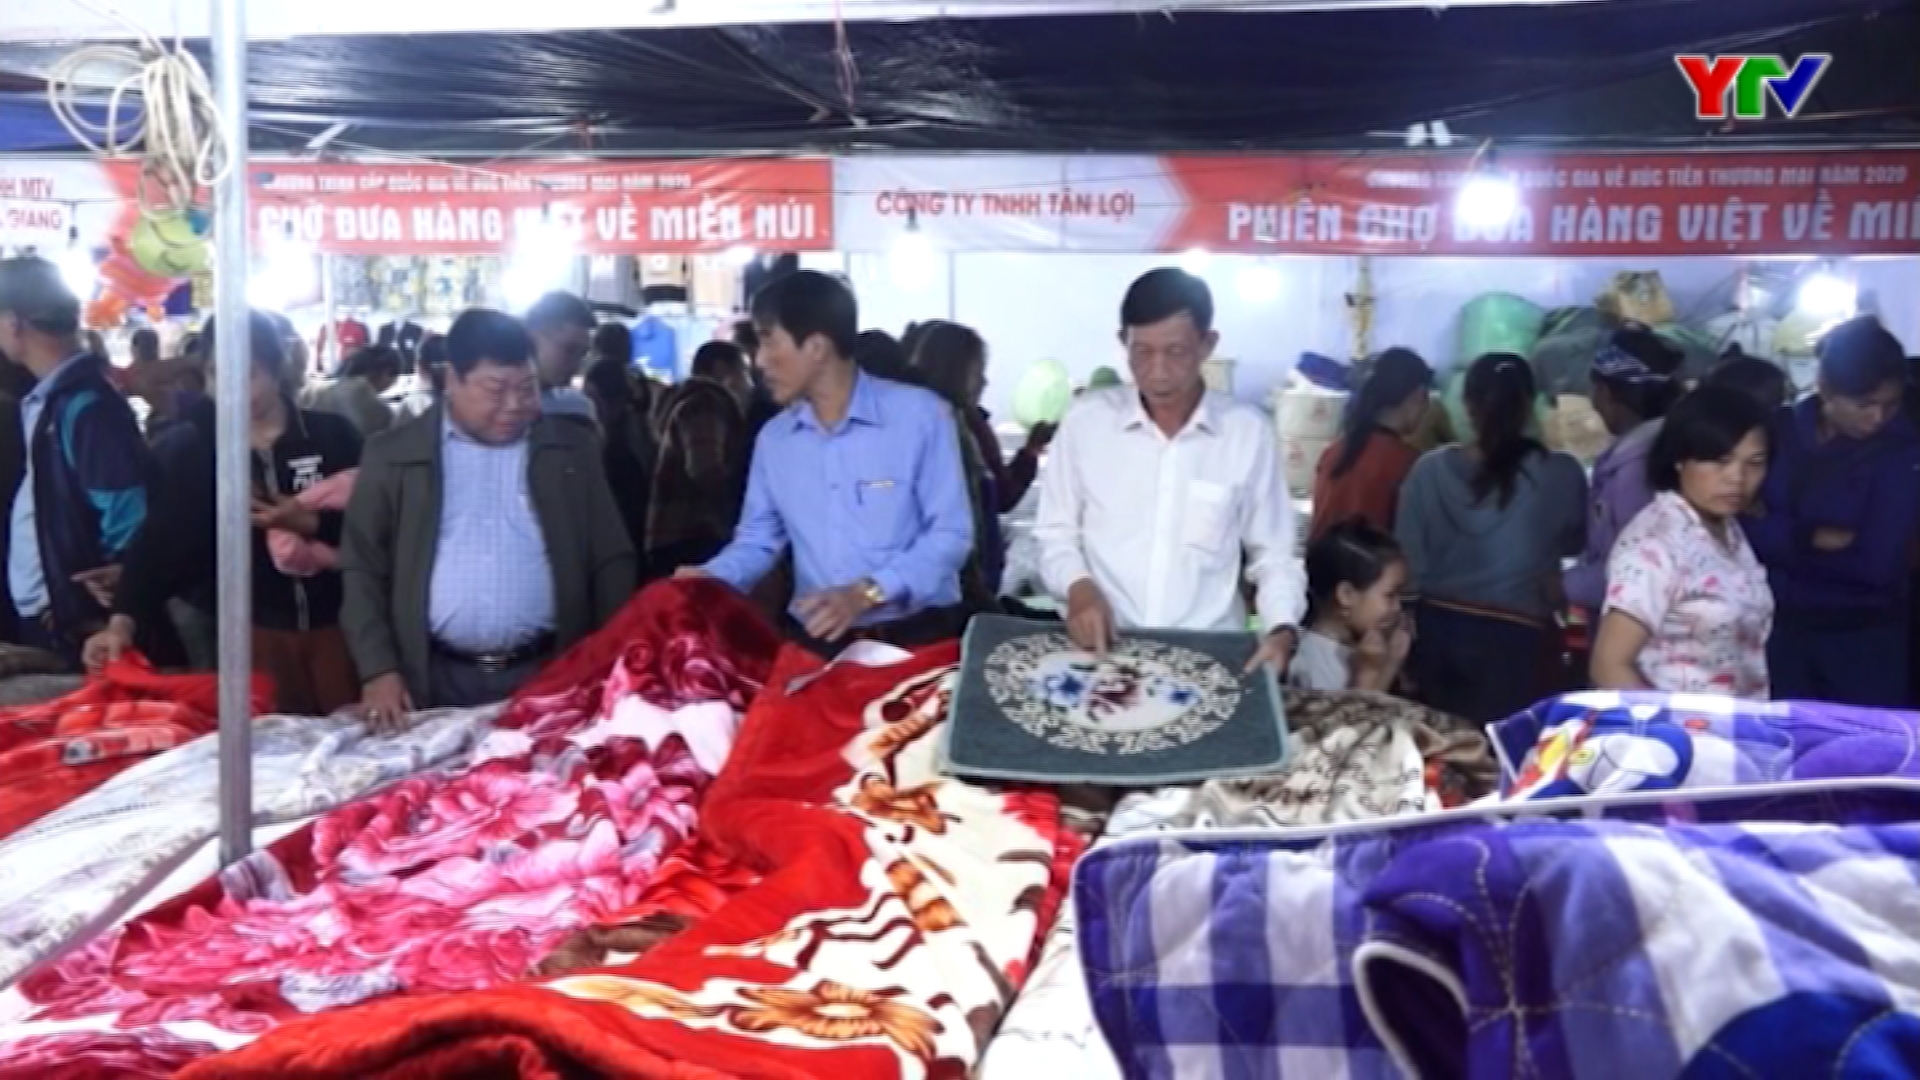 Phiên chợ đưa hàng Việt về miền núi tại huyện Lục Yên